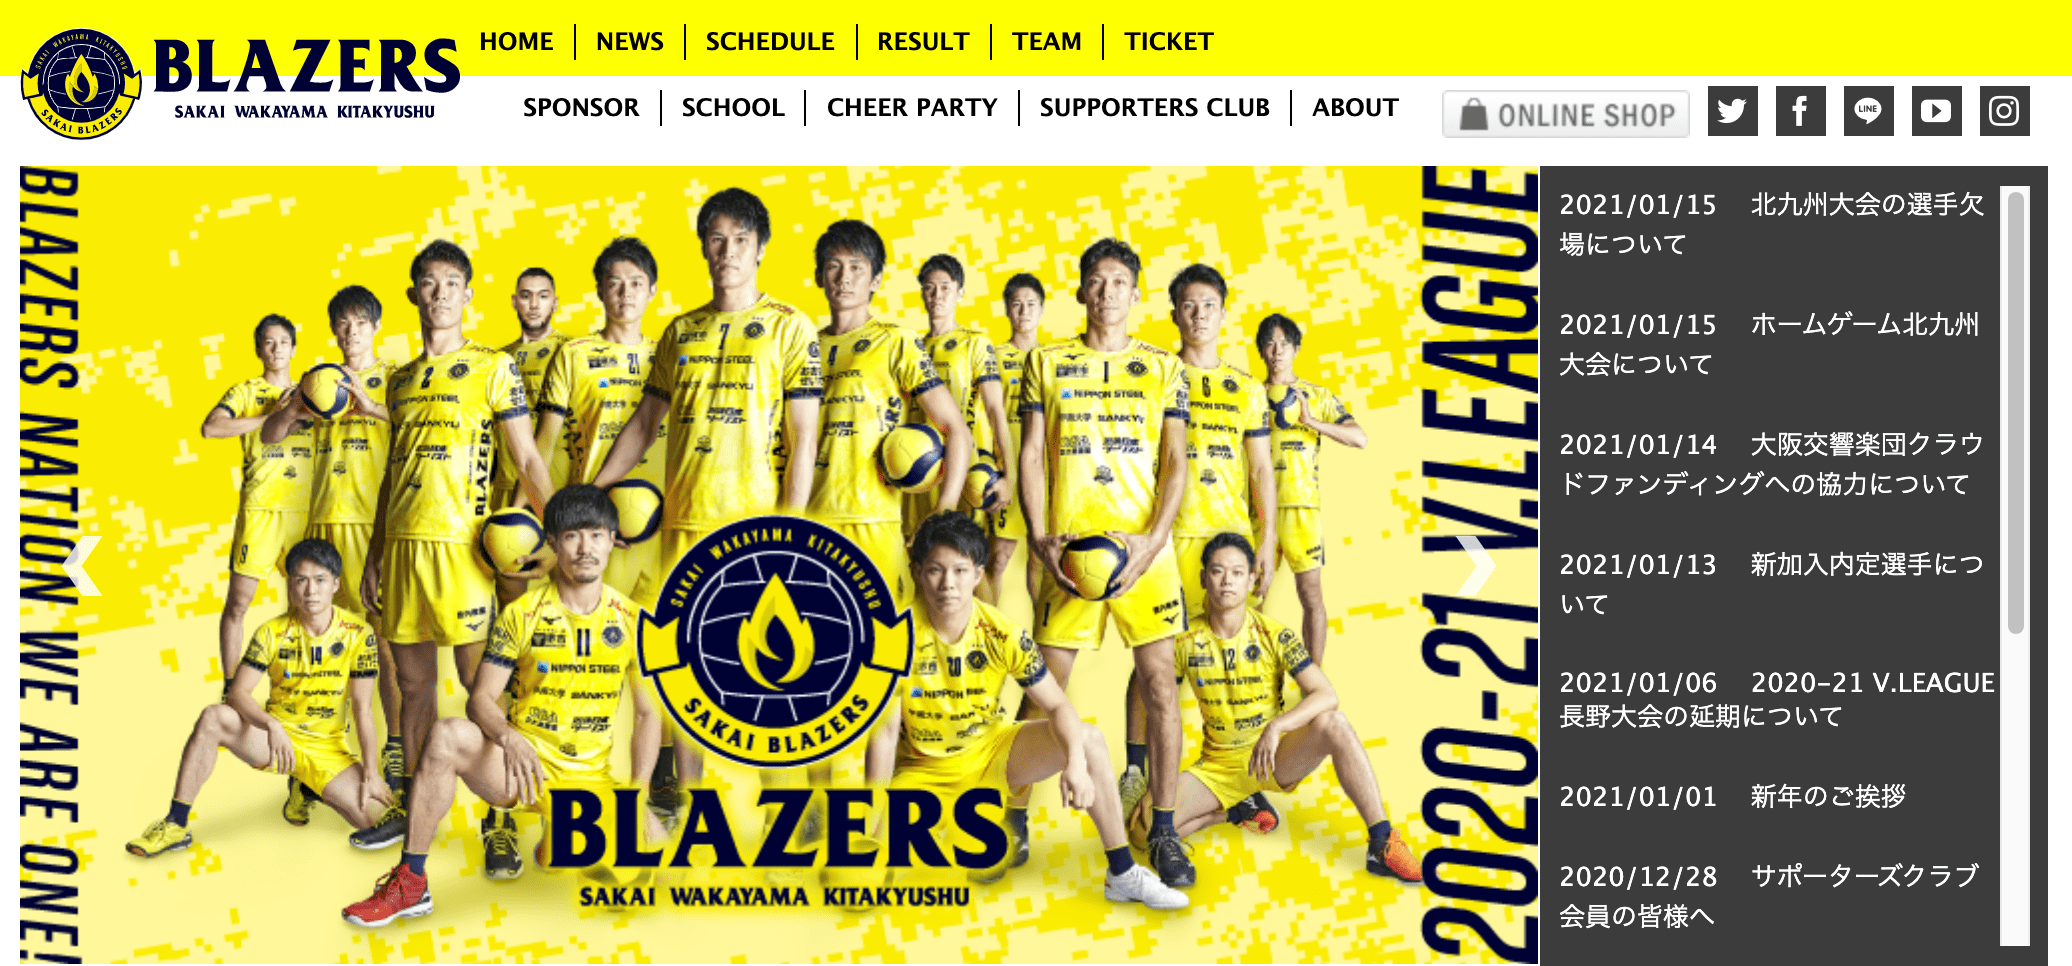 堺ブレイザーズ公式サイトの画像